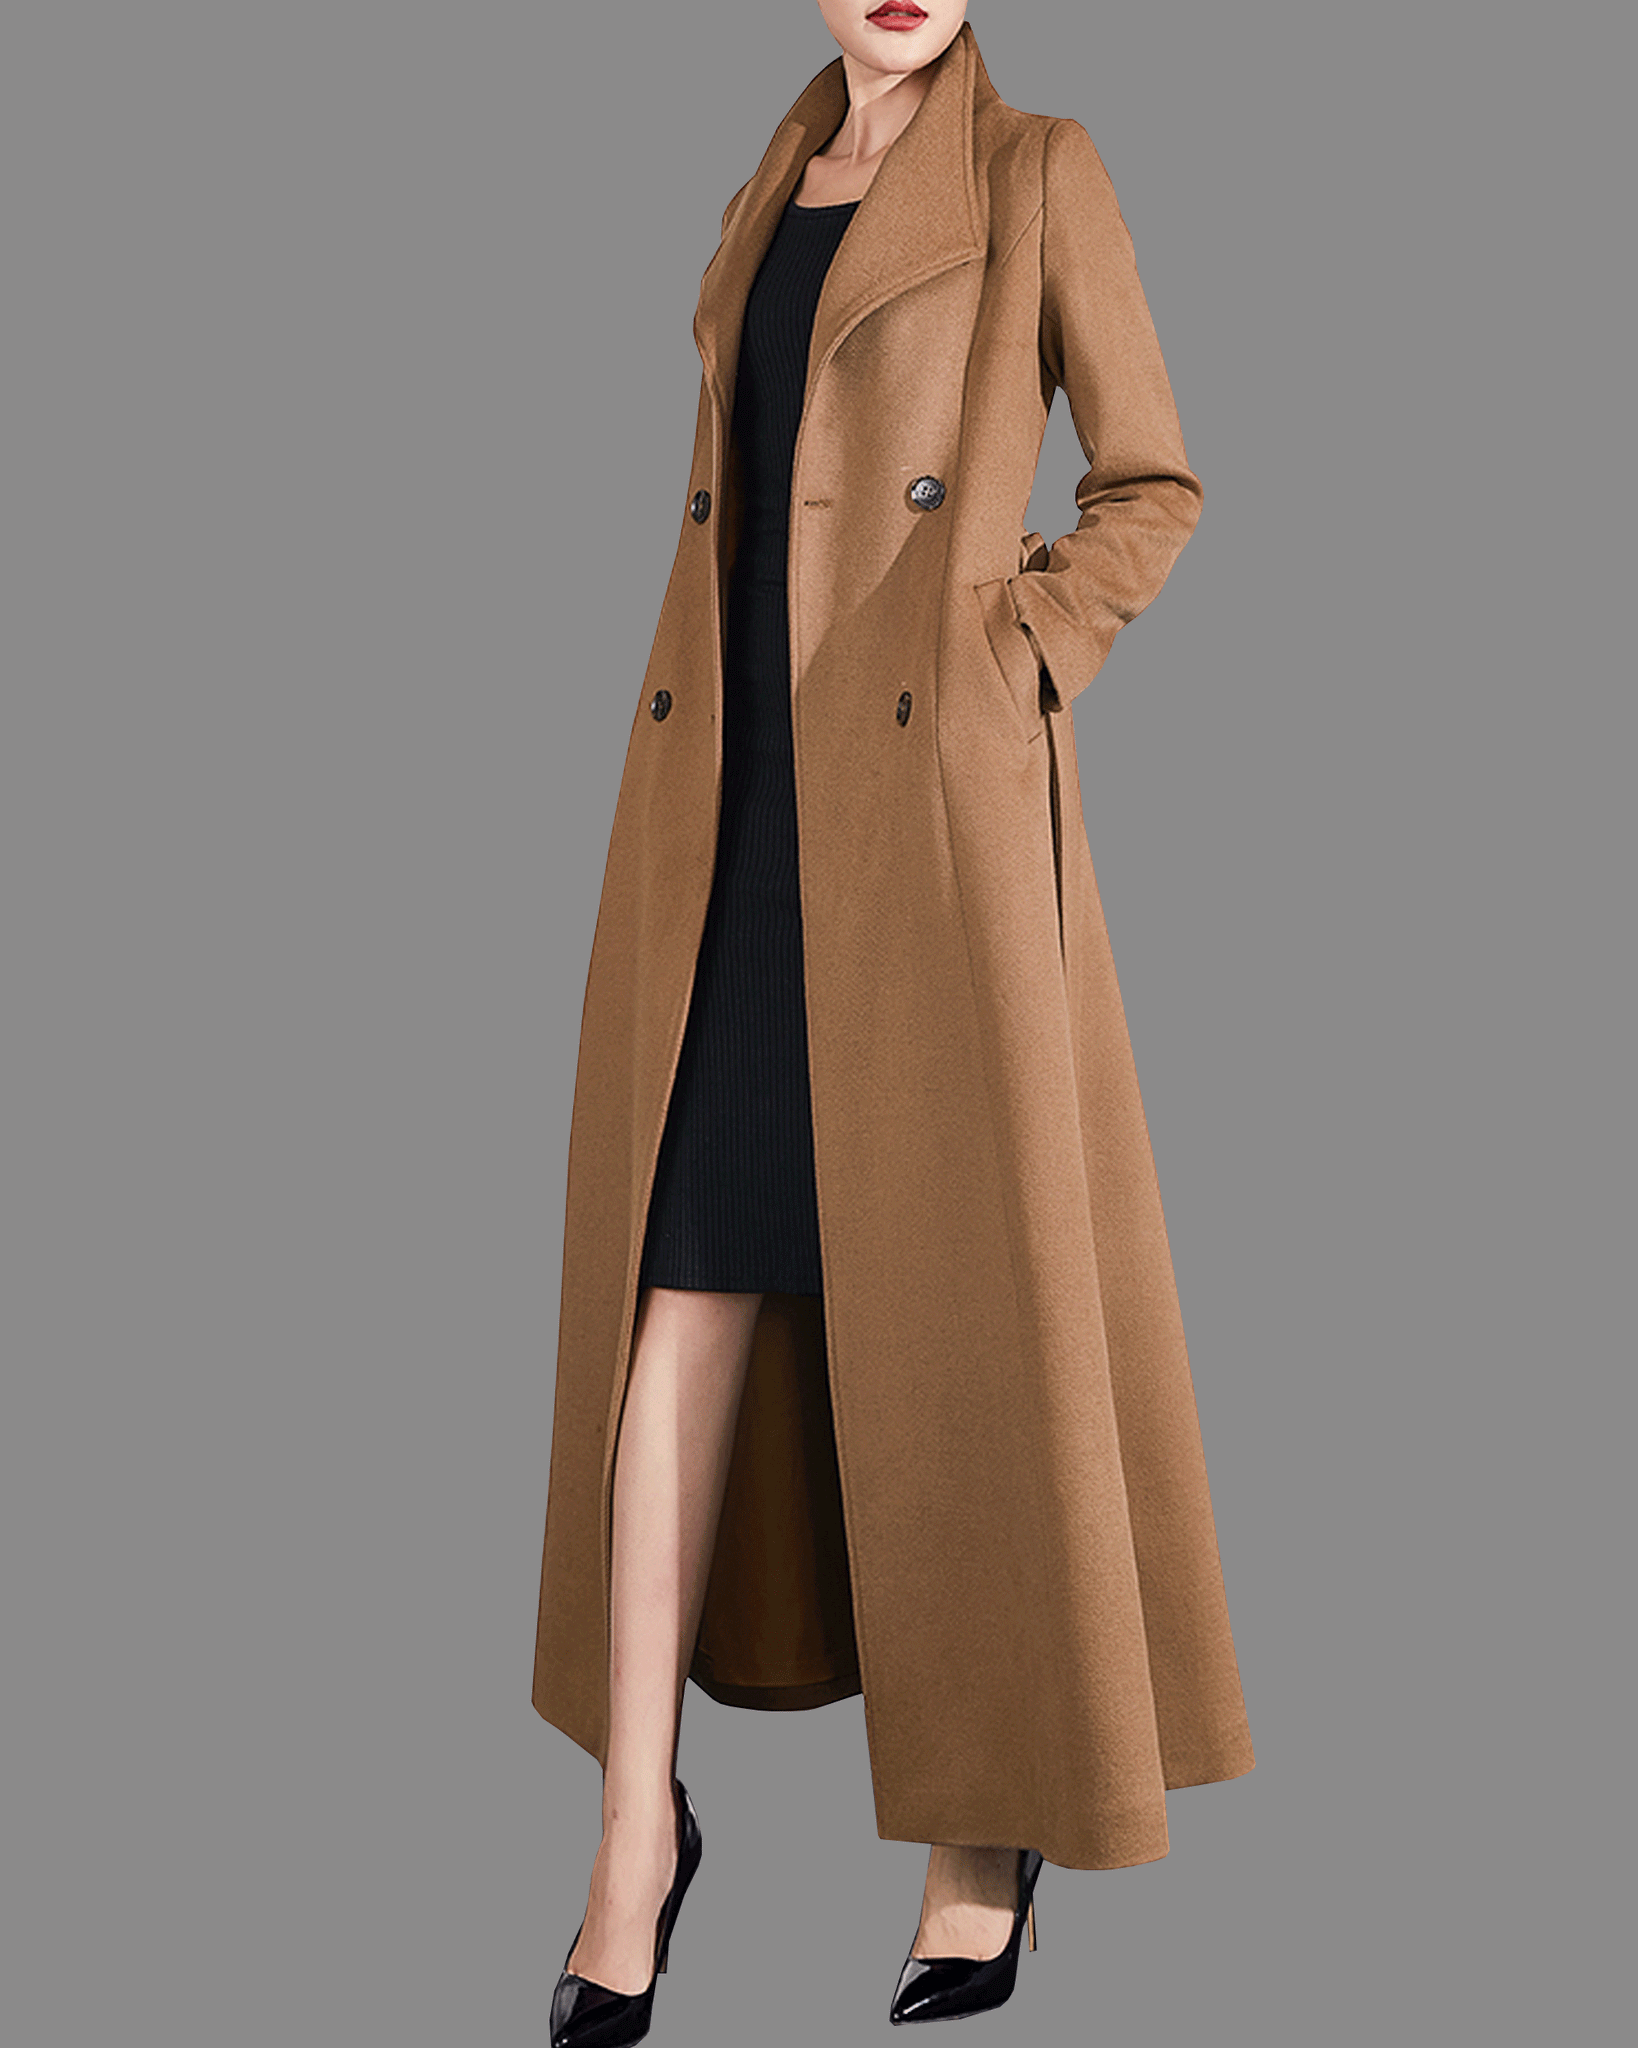 2019 Women Winter Coat Down Jacket Ladies Fur Hooded Jackets Long Puffer  Parka | eBay